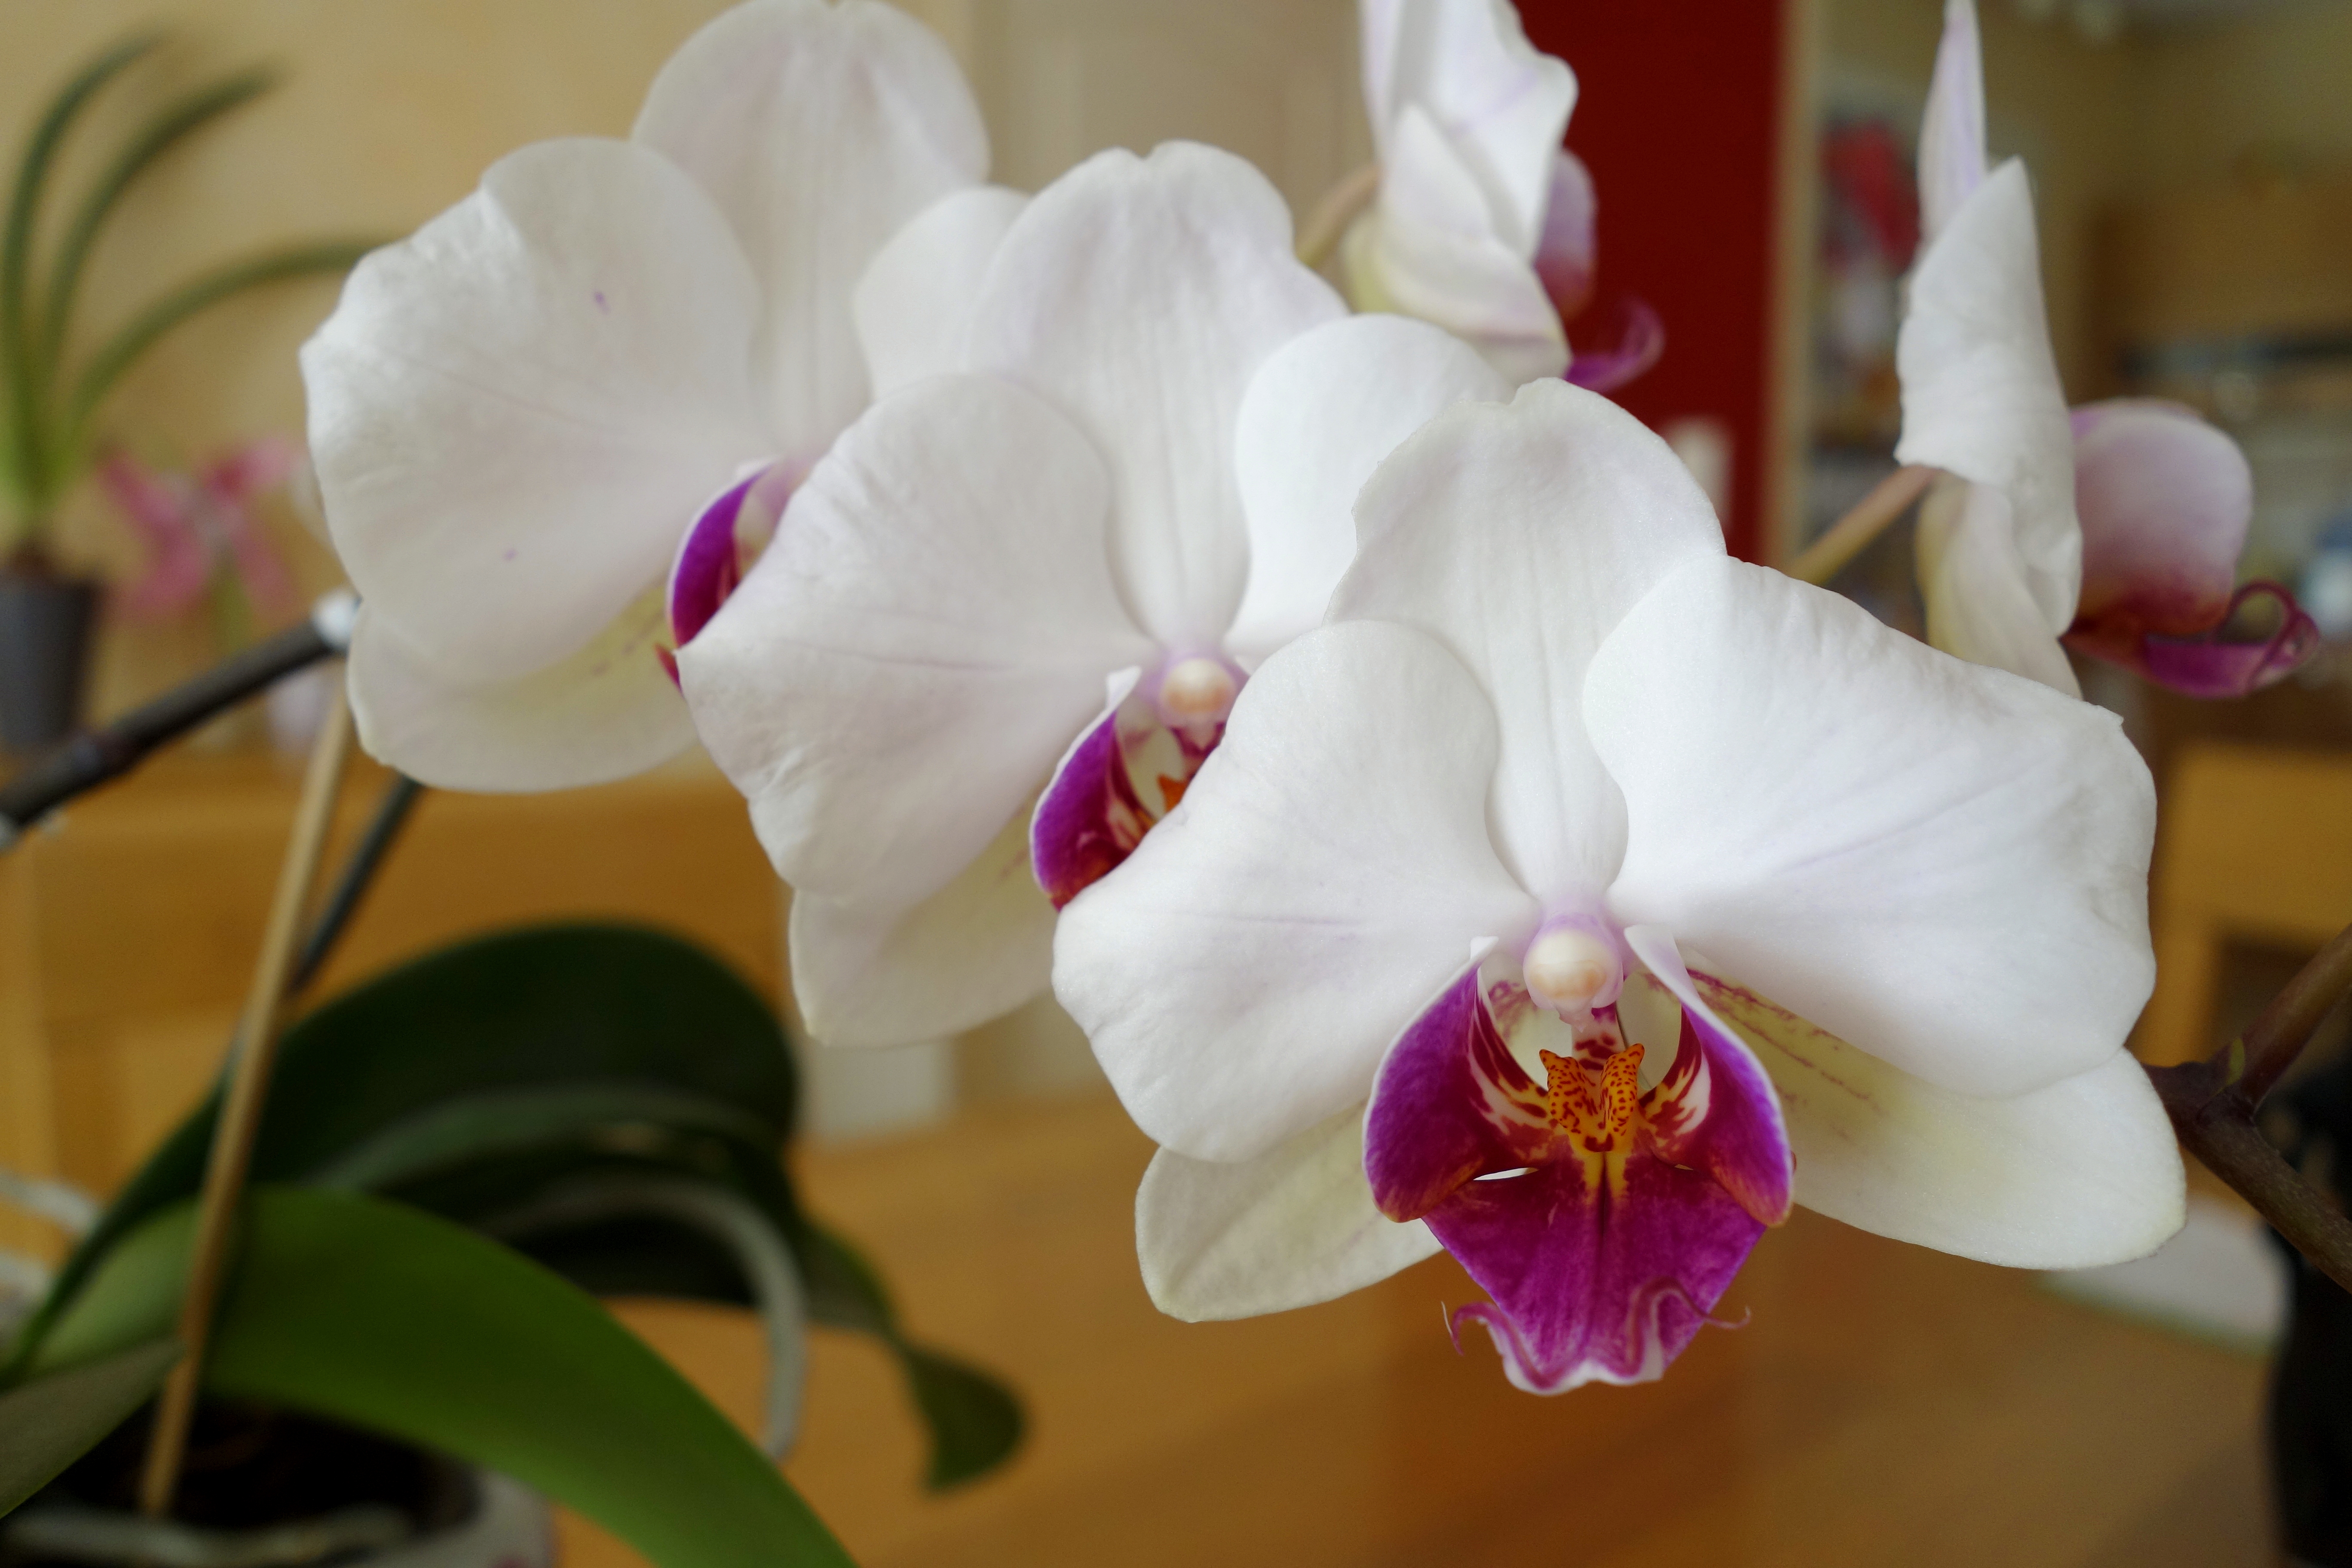 Comment rempoter une orchidée ? Avec quel substrat ?